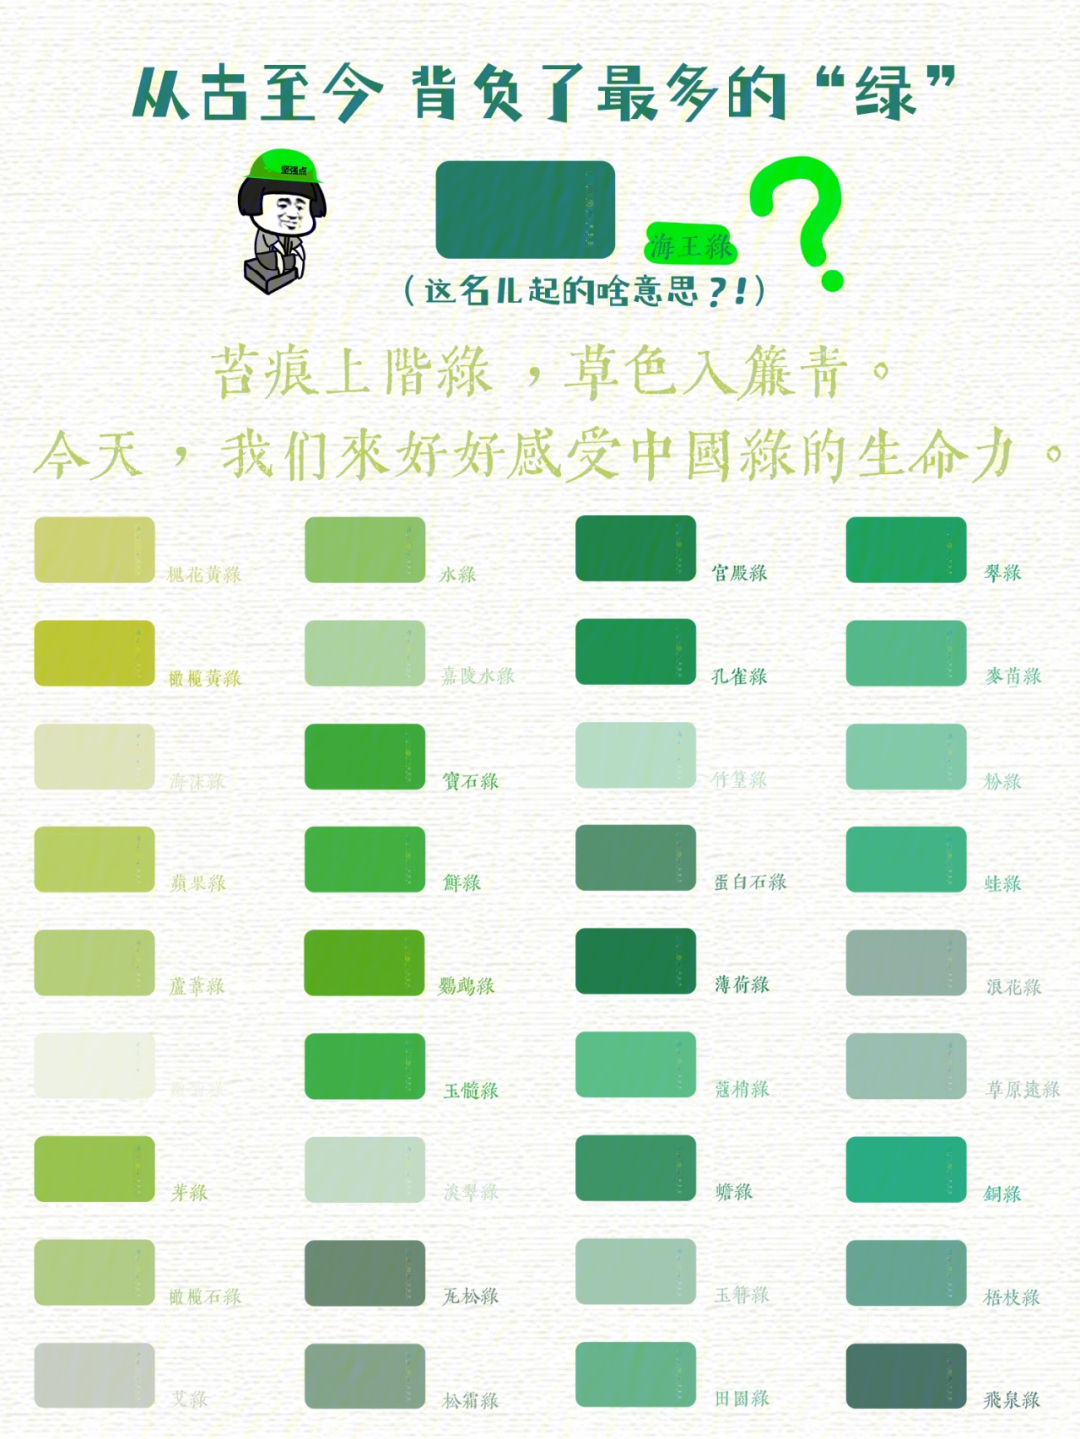 背负太多的绿色感受过中国绿的生命力么